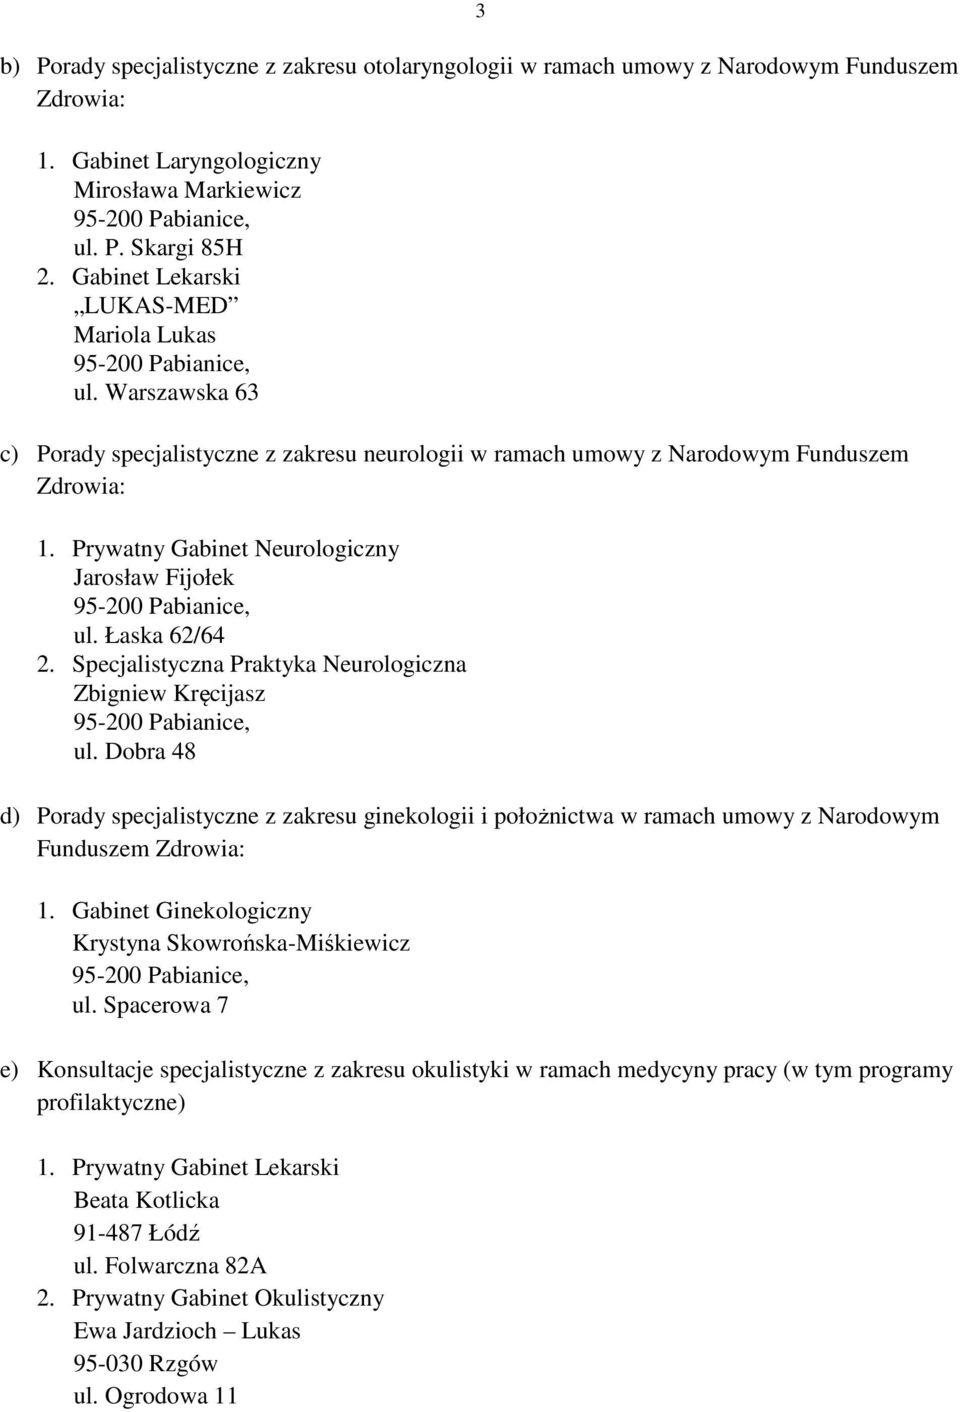 Prywatny Gabinet Neurologiczny Jarosław Fijołek ul. Łaska 62/64 2. Specjalistyczna Praktyka Neurologiczna Zbigniew Kręcijasz ul.